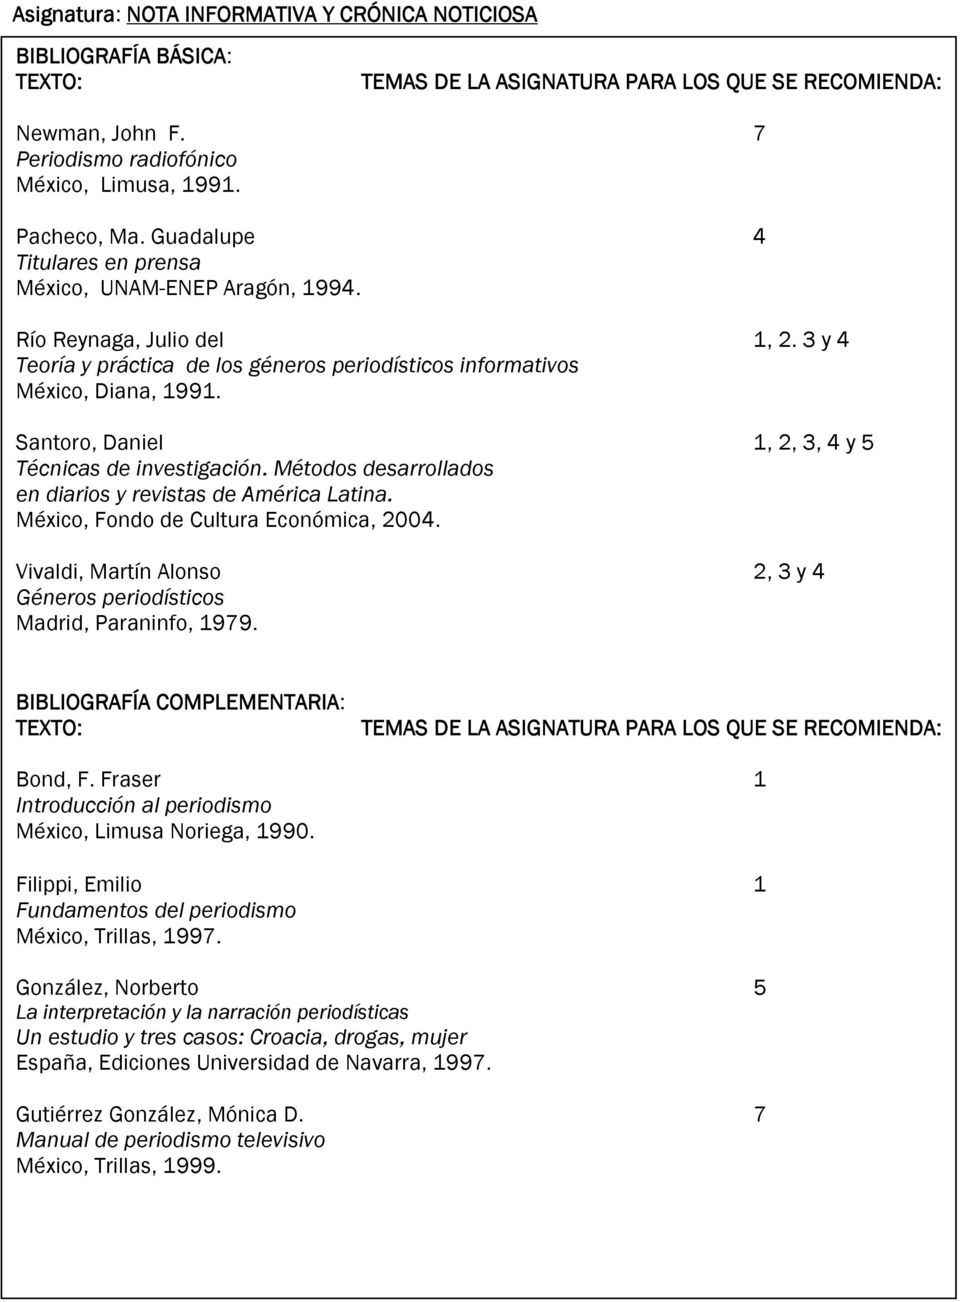 Santoro, Daniel 1, 2, 3, 4 y 5 Técnicas de investigación. Métodos desarrollados en diarios y revistas de América Latina. México, Fondo de Cultura Económica, 2004.